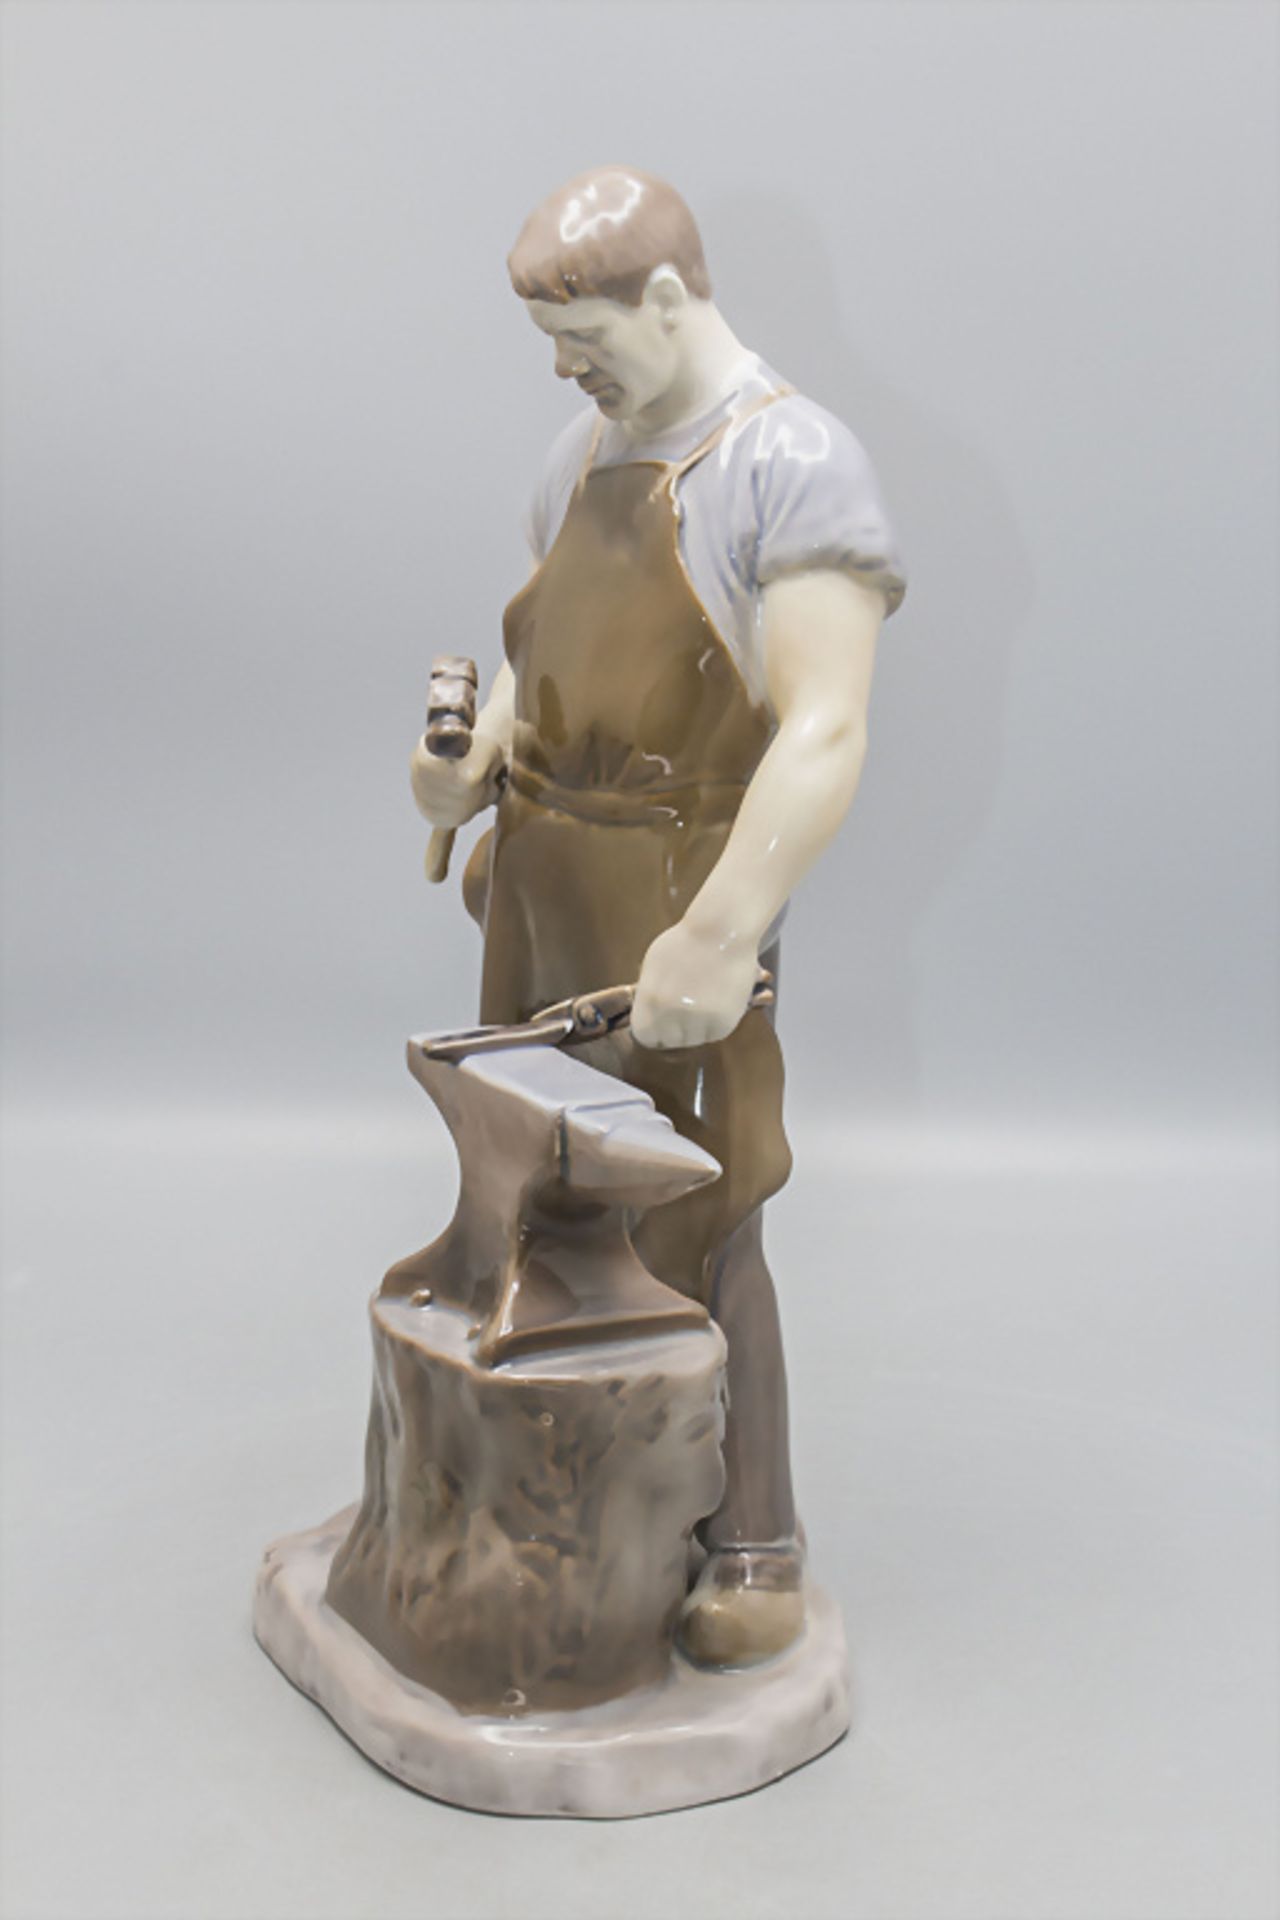 Porzellanfigur 'Schmied' / A porcelain figure of a blacksmith, Bing & Gröndahl, Copenhagen - Bild 4 aus 8